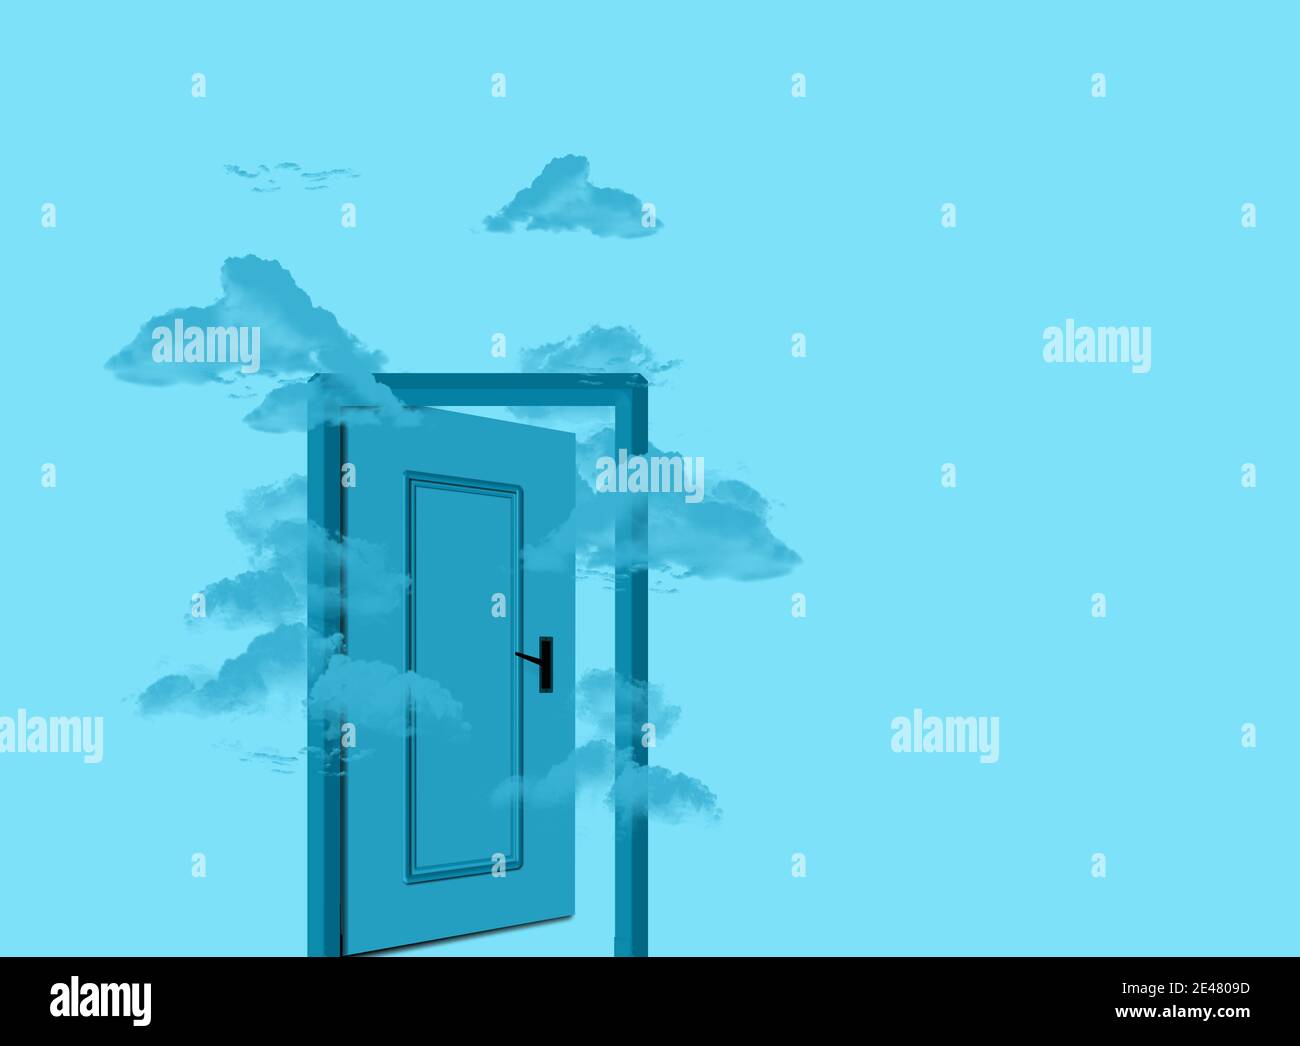 porte bleue dans le ciel nuageux, avec des nuages bleus volent à travers la demi-porte ouverte. Illustration conceptuelle 3D du concept imagination. Design élégant Banque D'Images